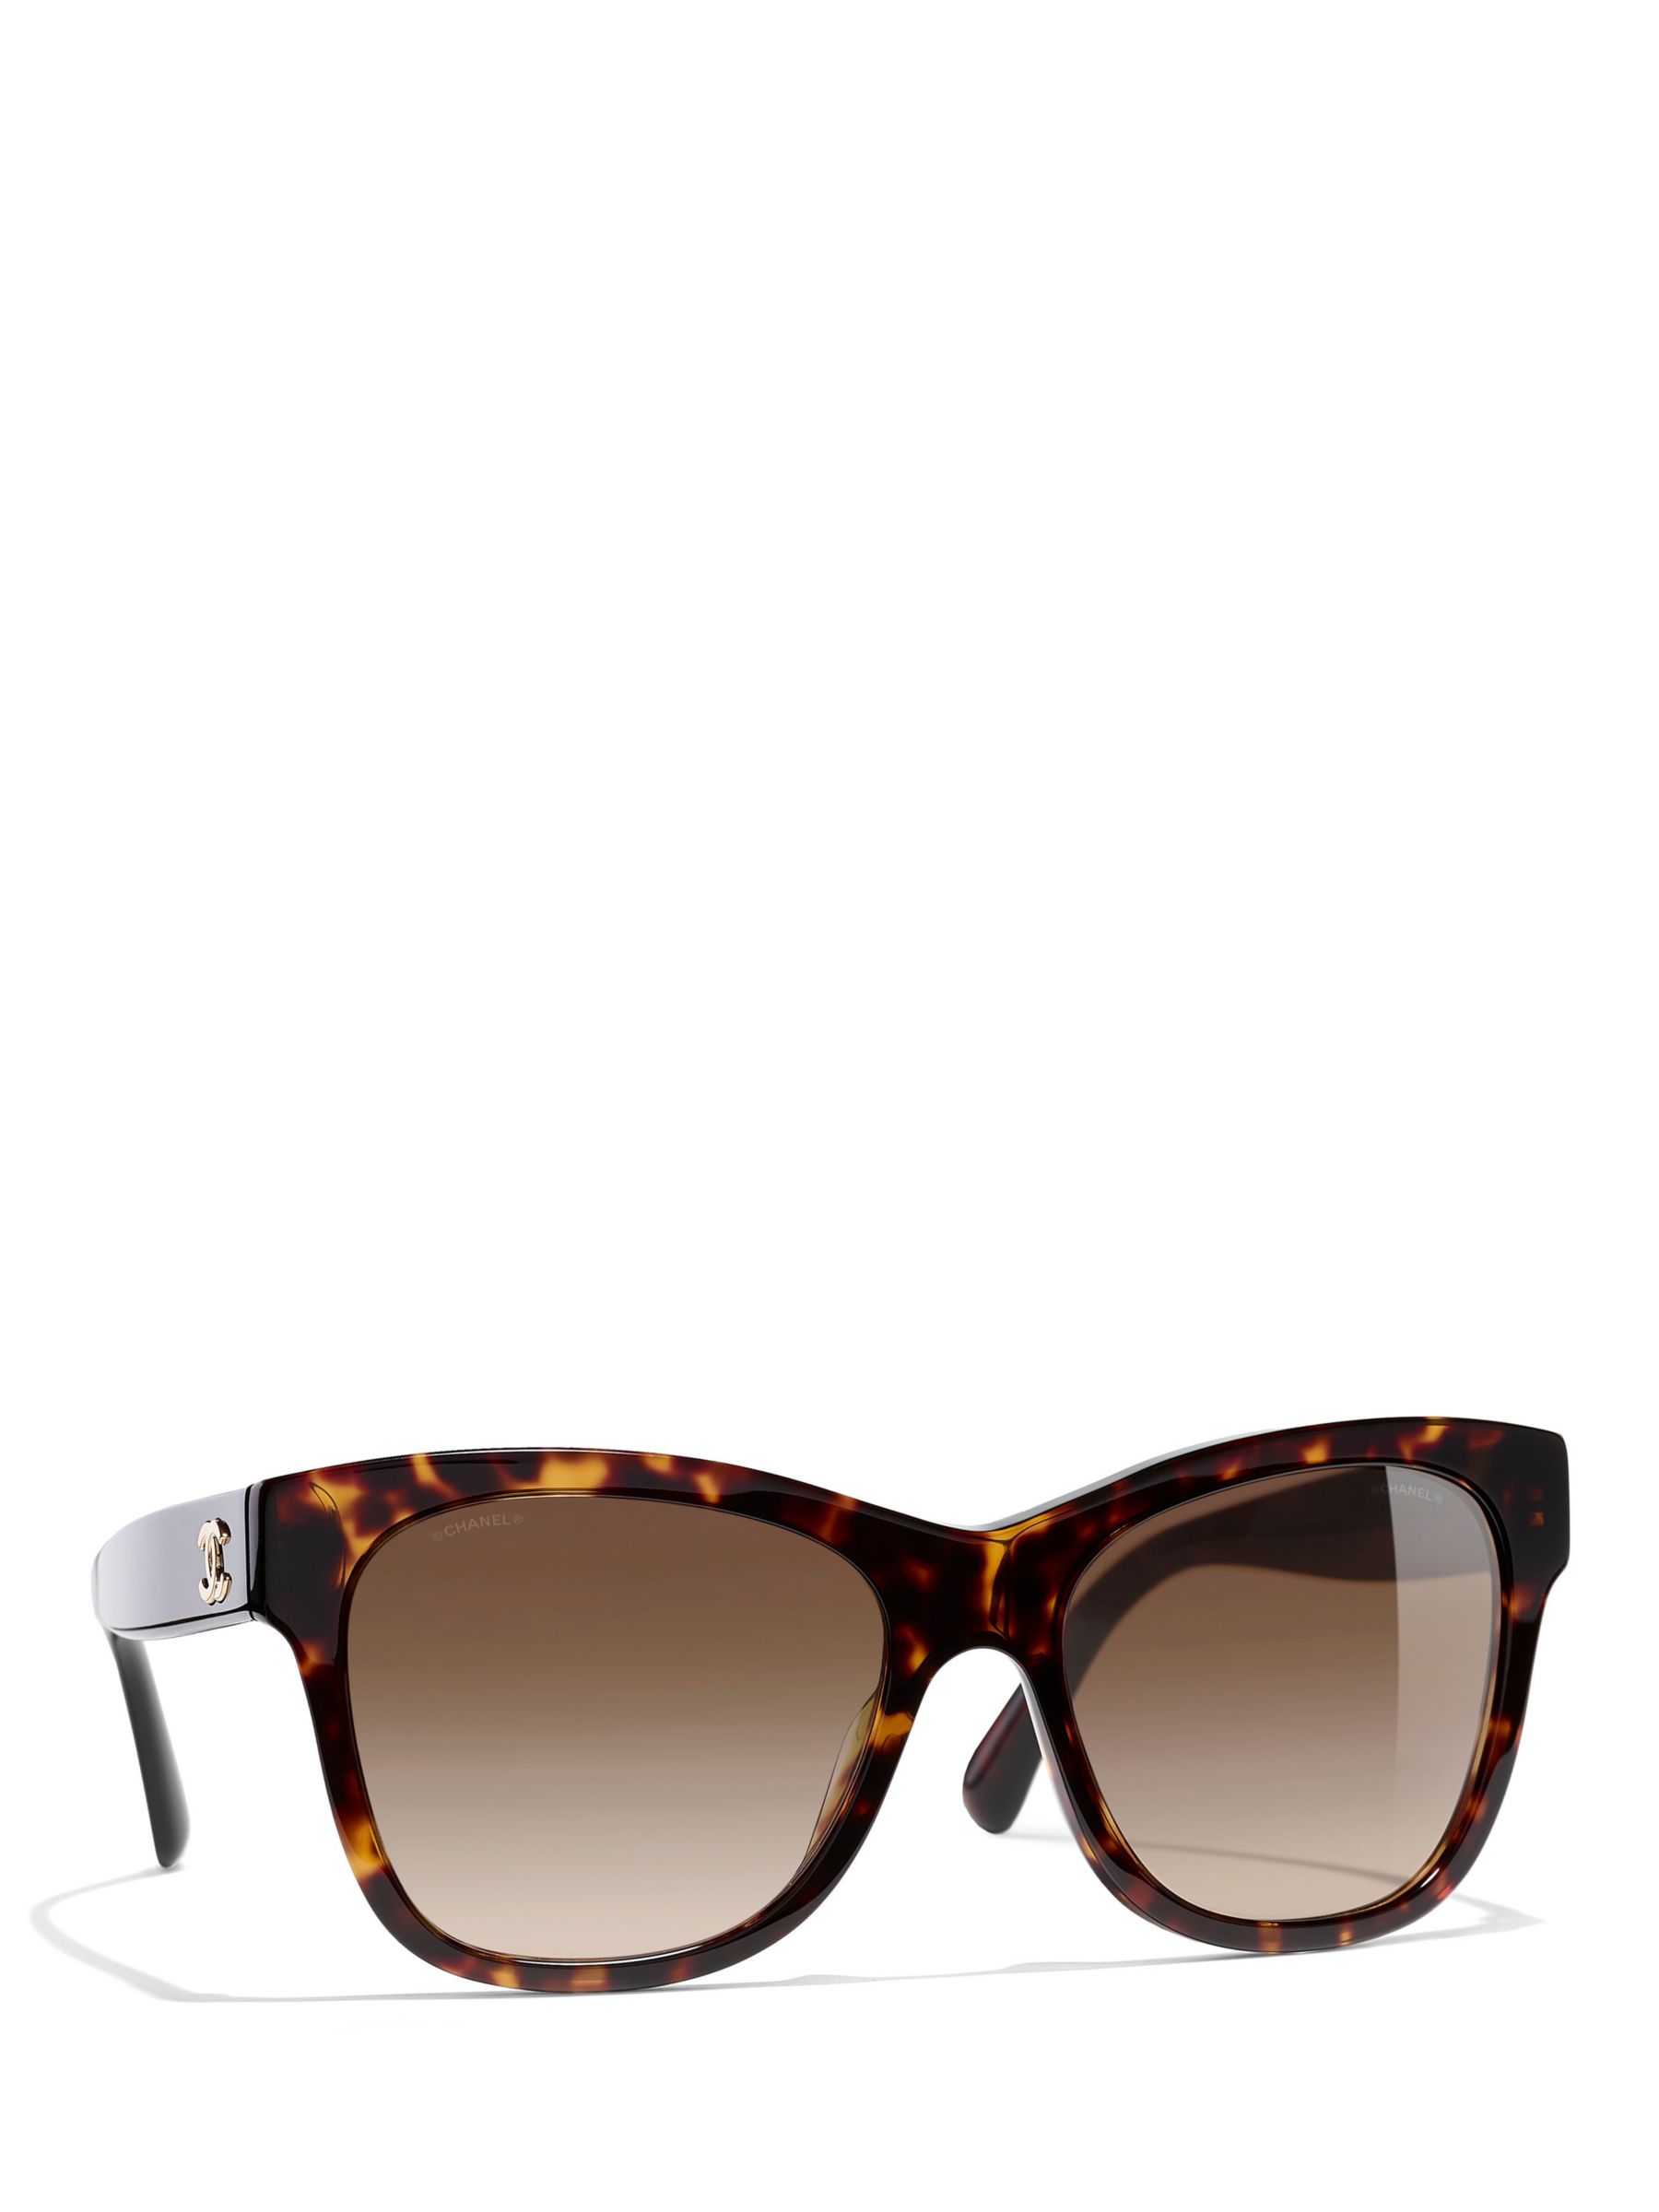 Chanel Interlocking CC Logo Oversize Sunglasses - Brown Sunglasses,  Accessories - CHA961091